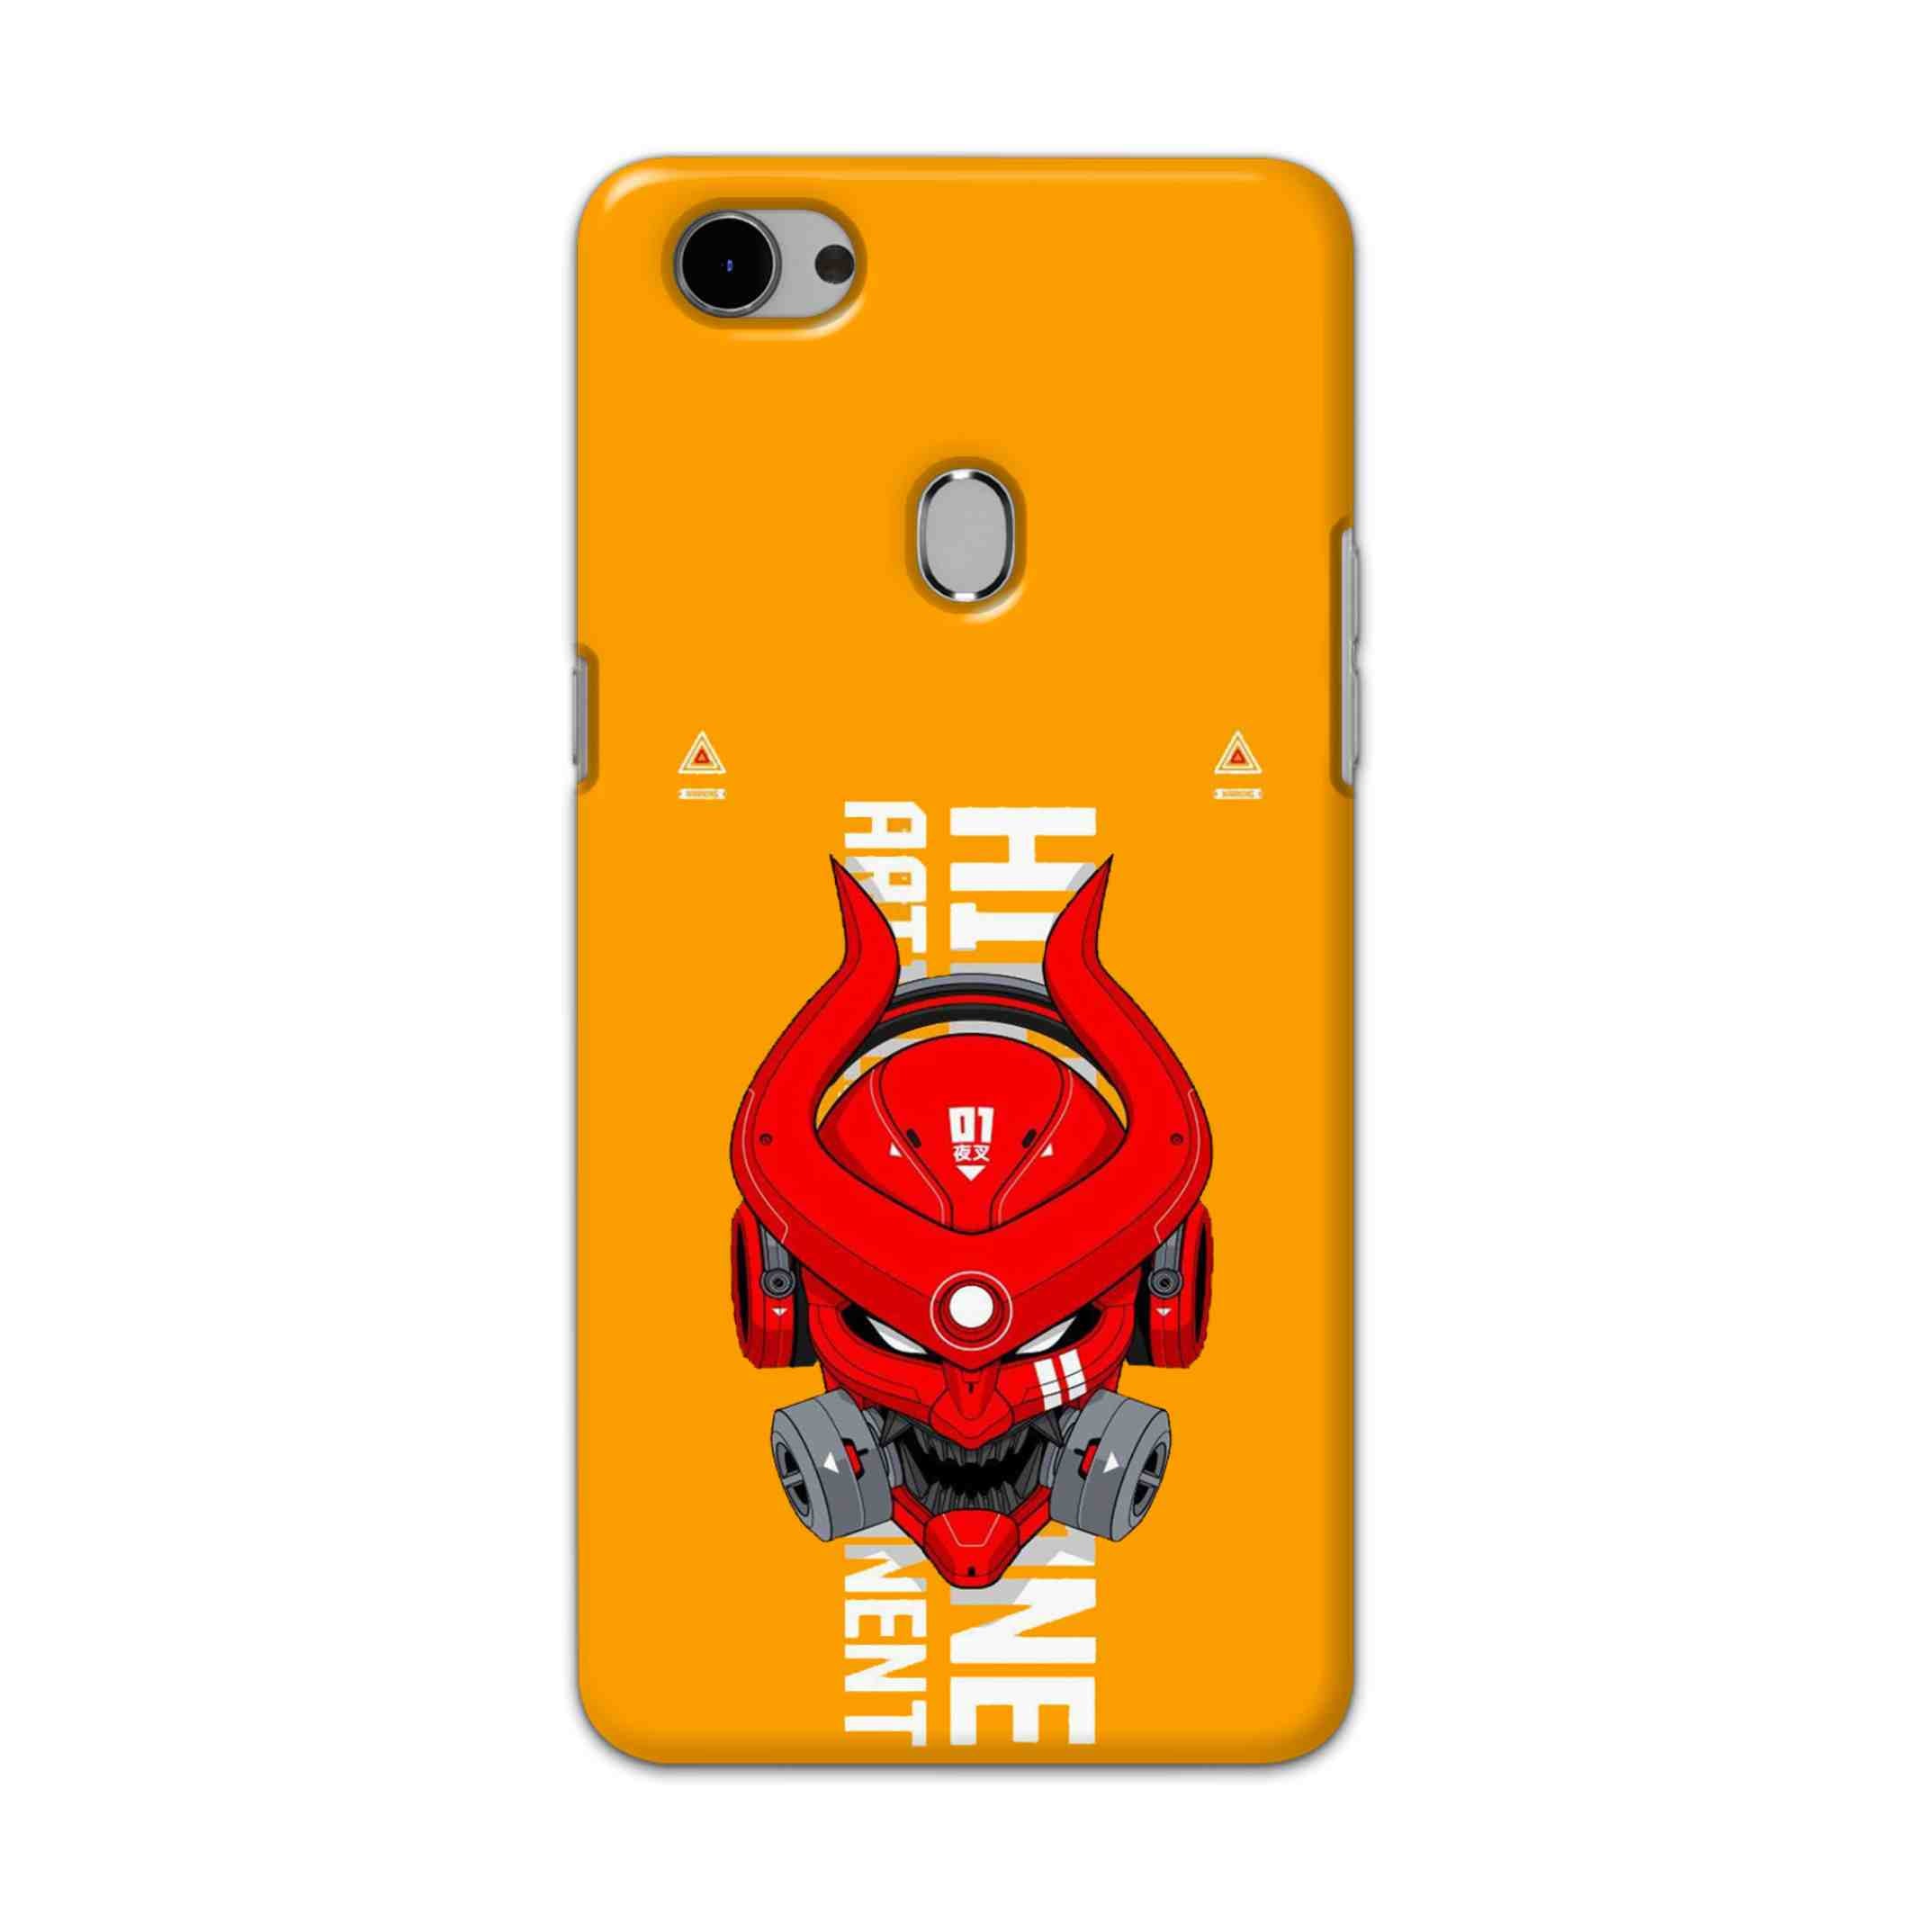 Buy Bull Skull Hard Back Mobile Phone Case Cover For Oppo F7 Online